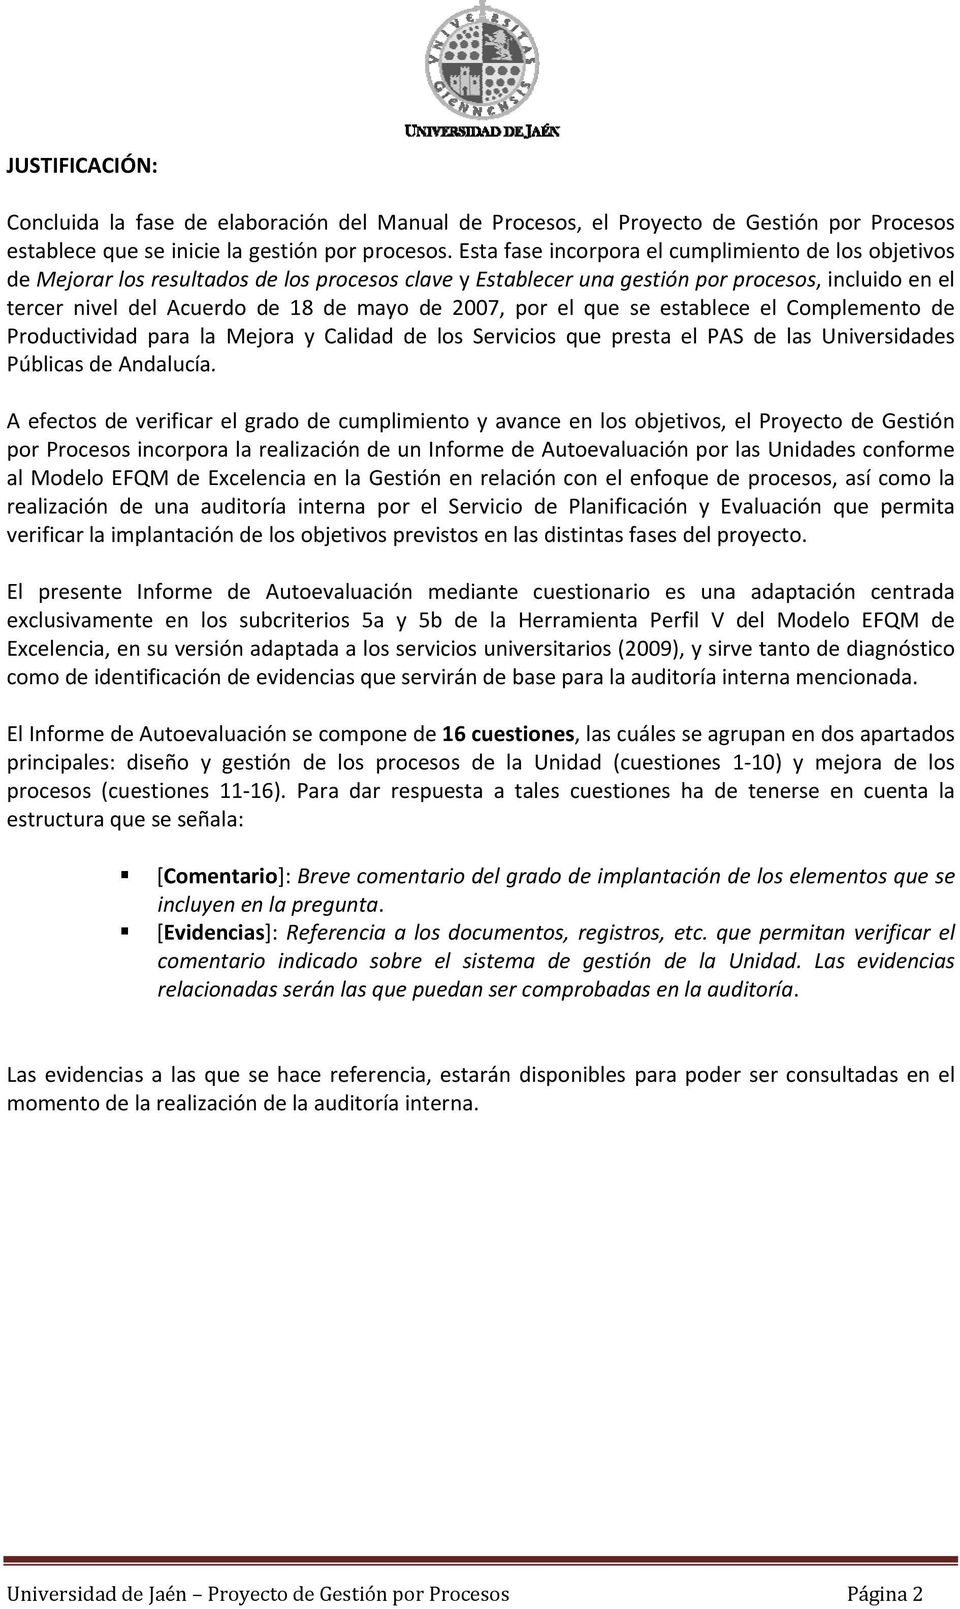 2007, por el que se establece el Complemento de Productividad para la Mejora y Calidad de los Servicios que presta el PAS de las Universidades Públicas de Andalucía.